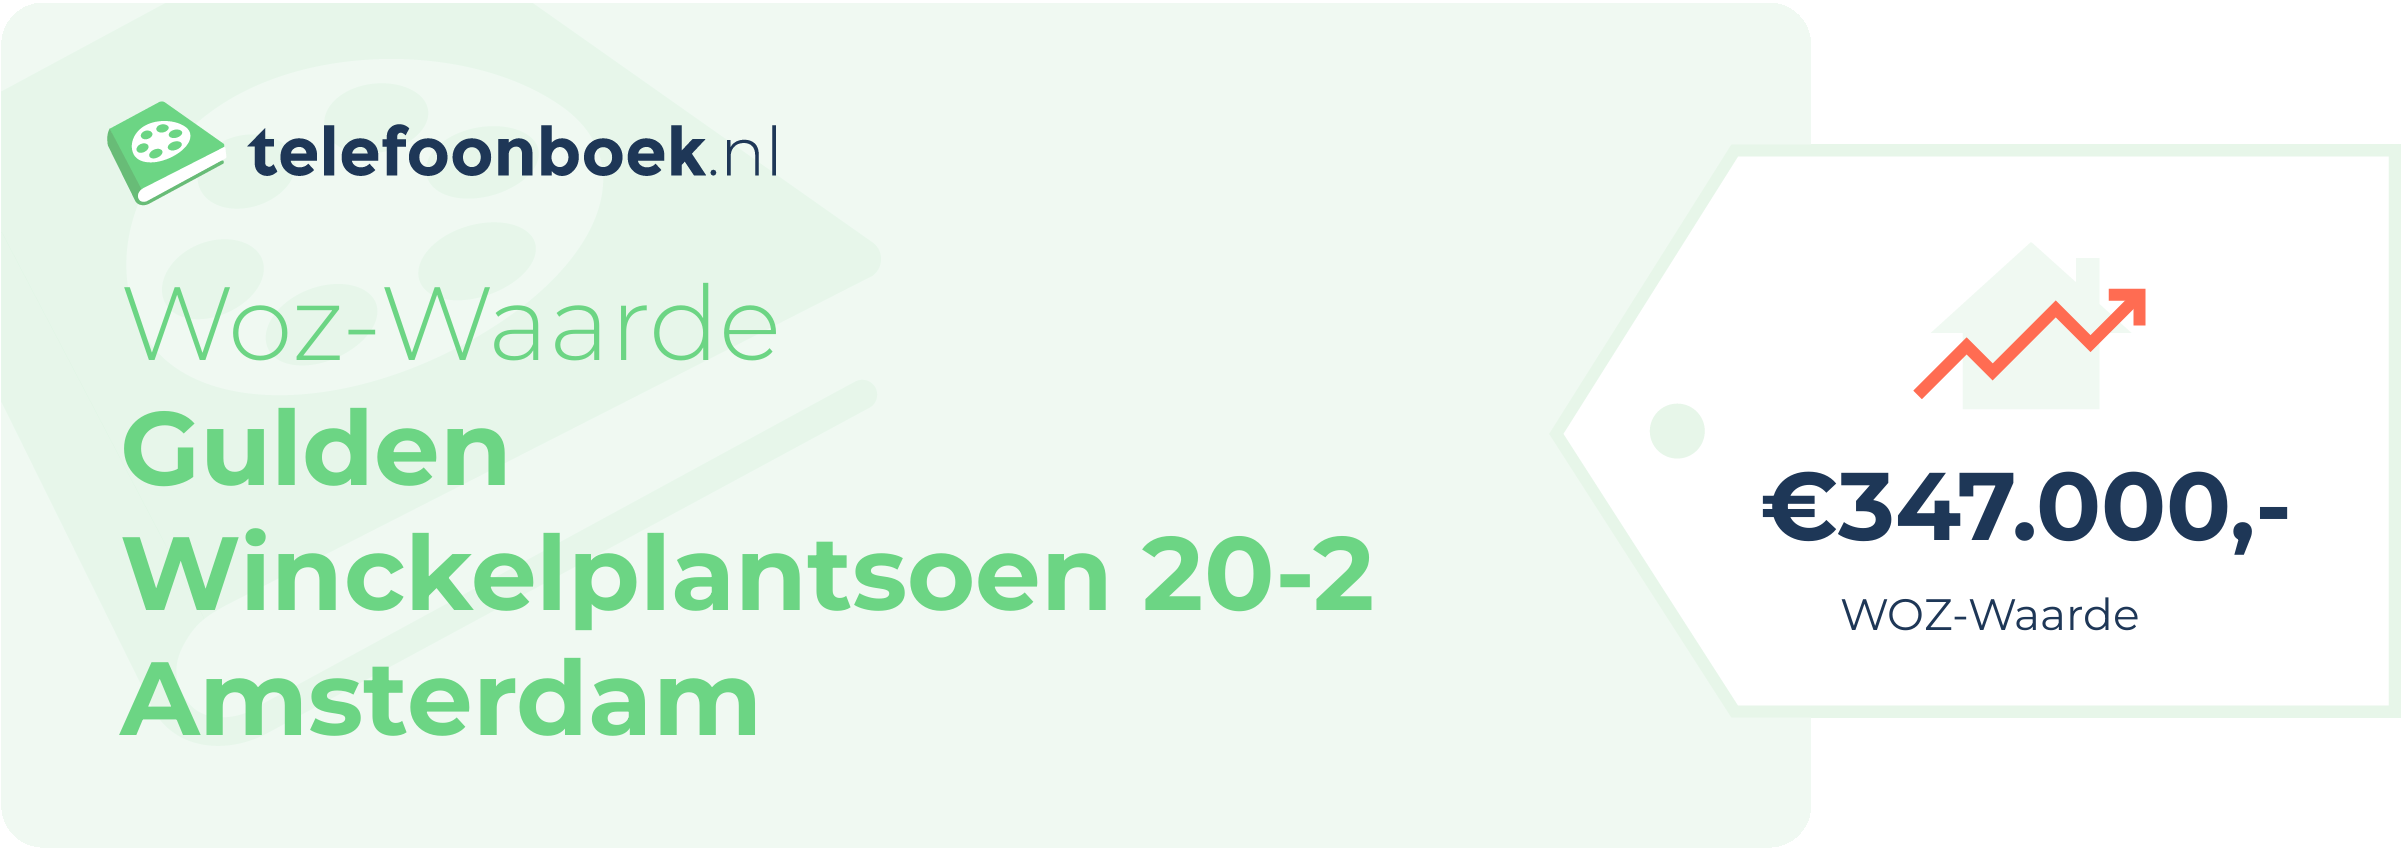 WOZ-waarde Gulden Winckelplantsoen 20-2 Amsterdam